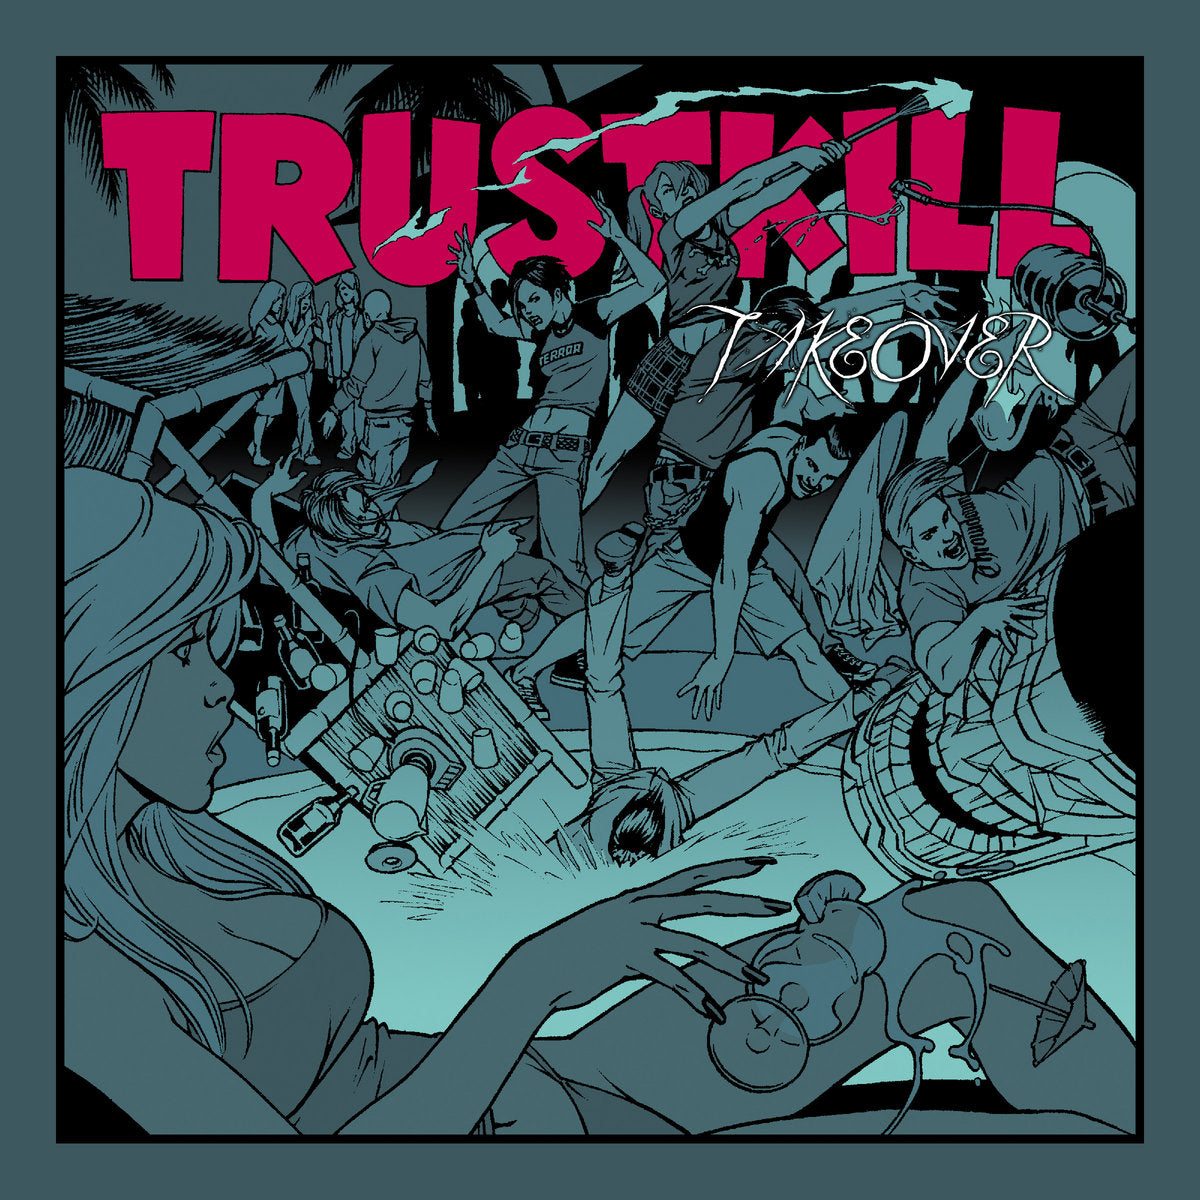 Trustkill Records "Trustkill Takeover" Compilation CD